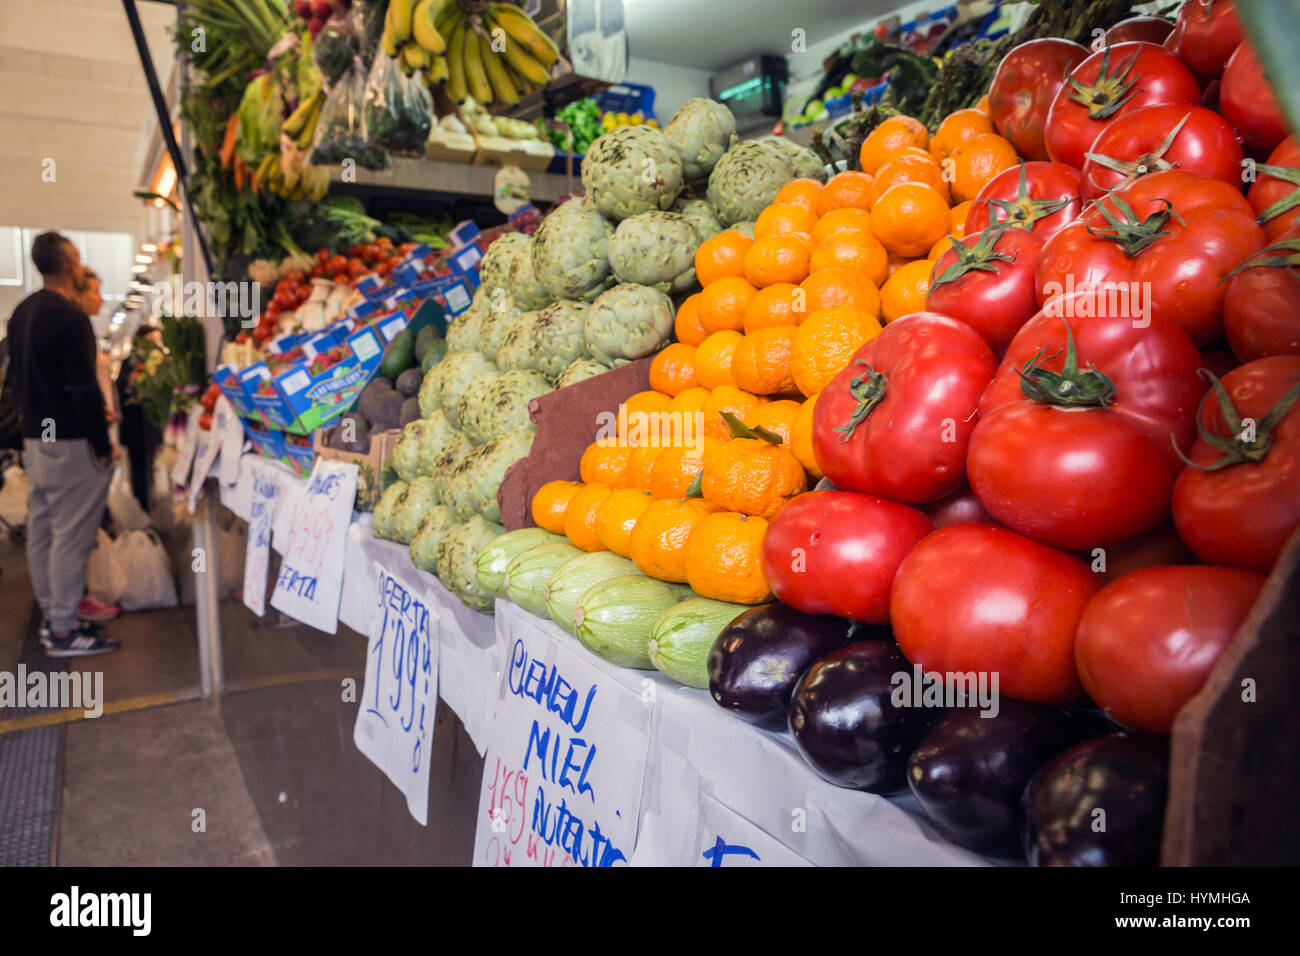 Décrochage du marché alimentaire des agriculteurs avec variété de légumes biologiques, Cadix, Espagne Banque D'Images